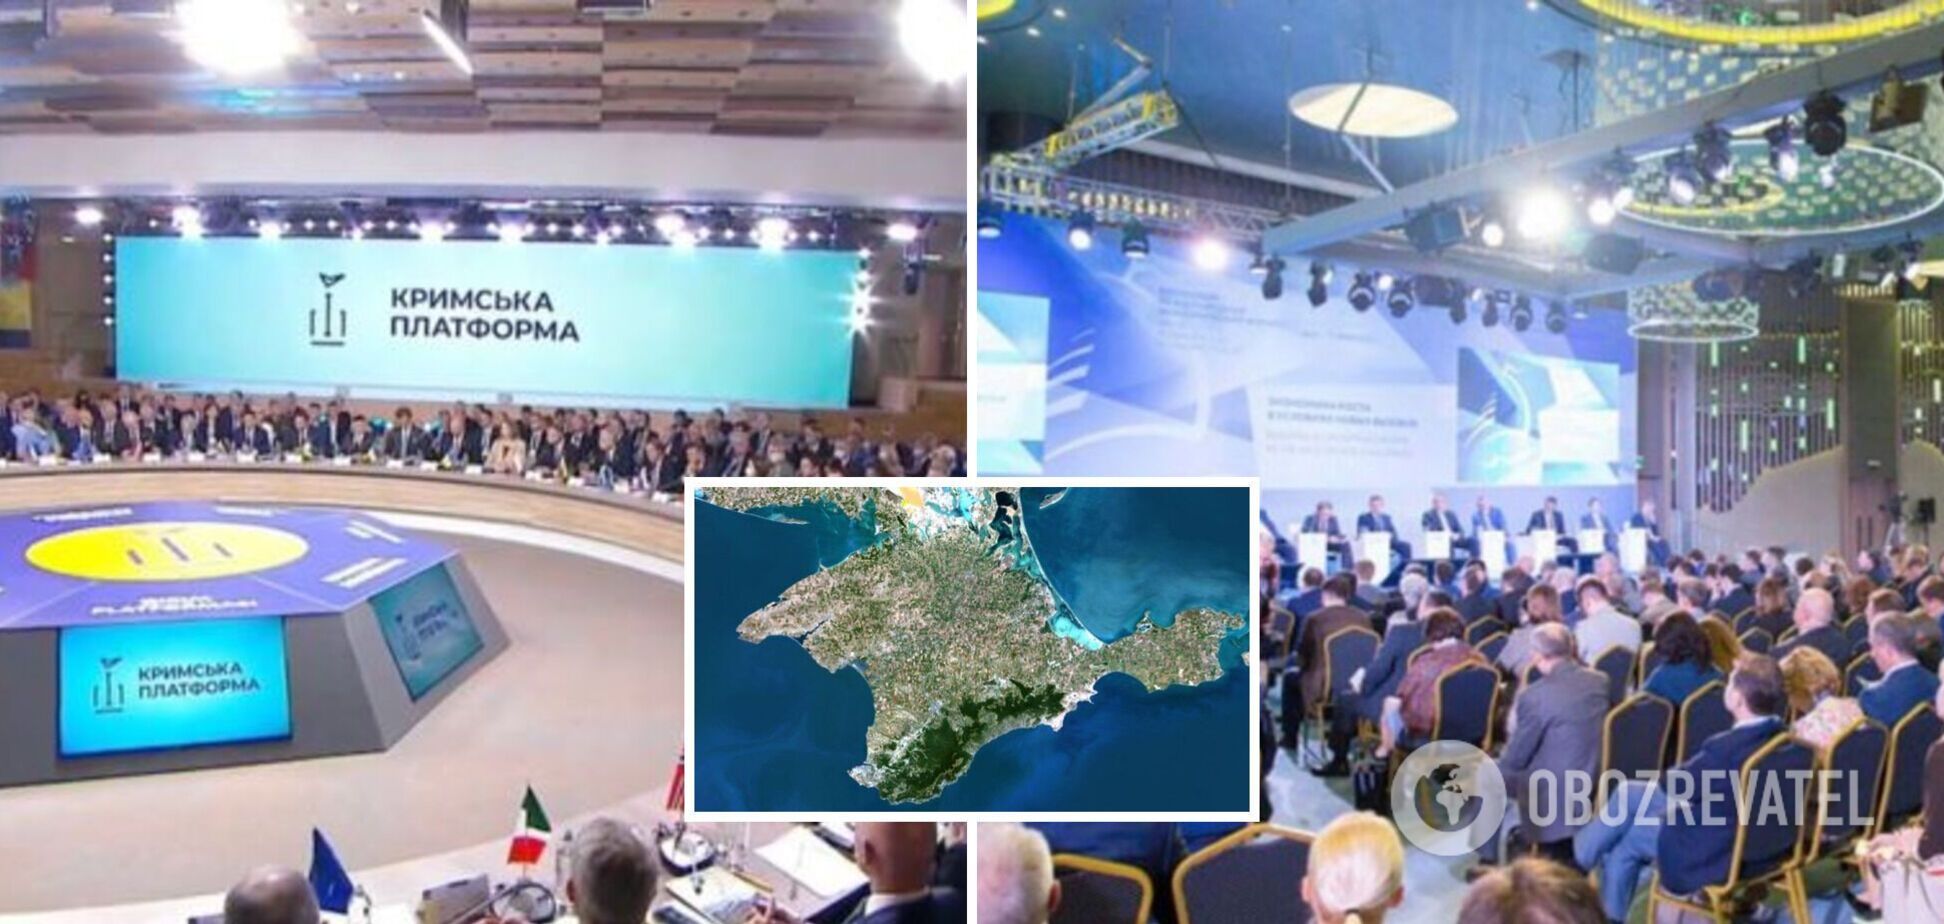 В России создали фейковый конгресс в противовес 'Крымской платформе'